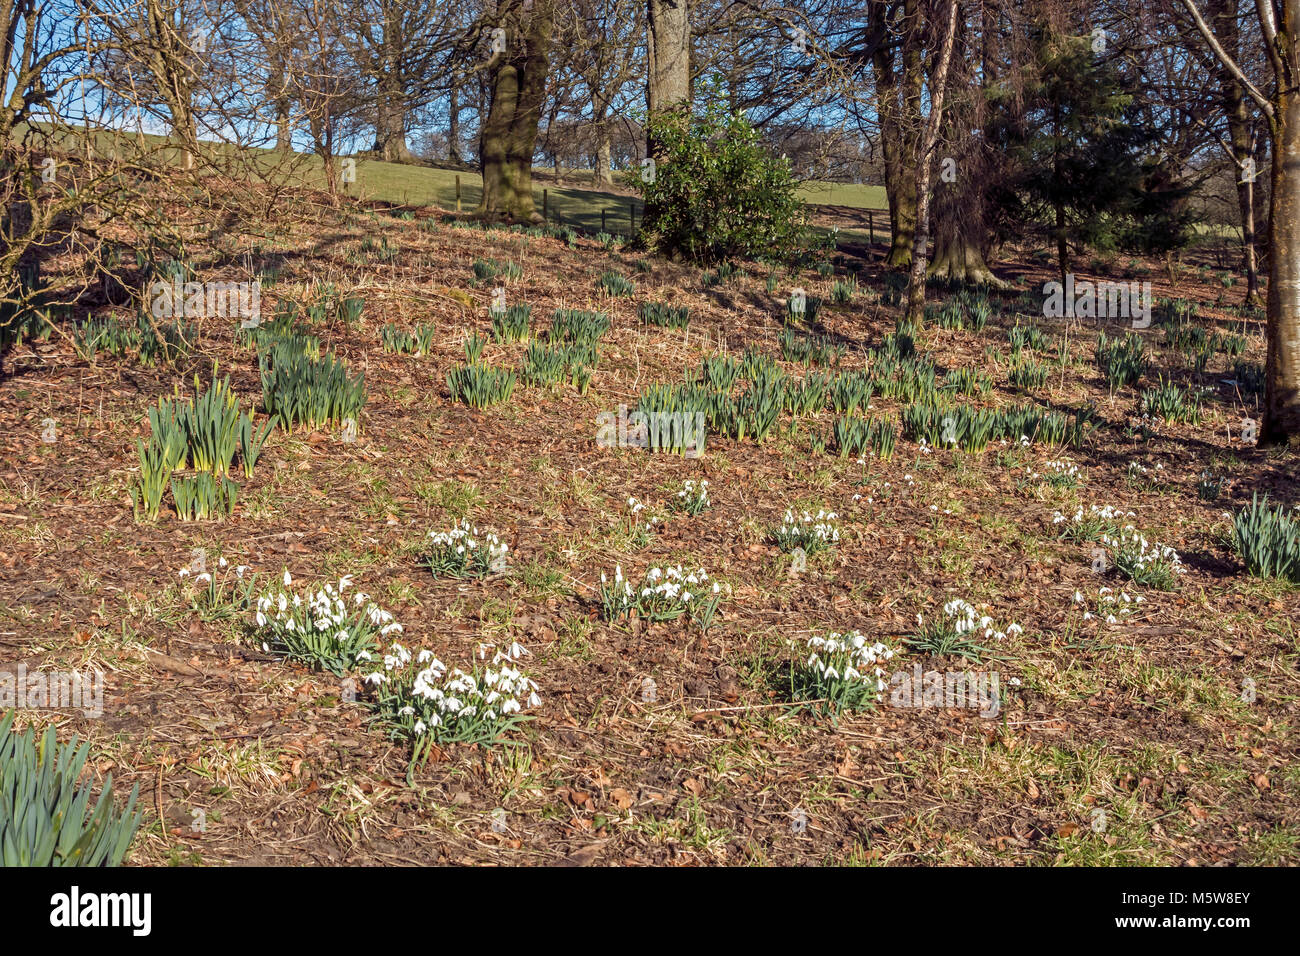 Colzium Estate & Visitor Center in der Nähe von Kilsyth in North Lanarkshire Schottland Großbritannien hier Schneeglöckchen Blumen im Garten Stockfoto